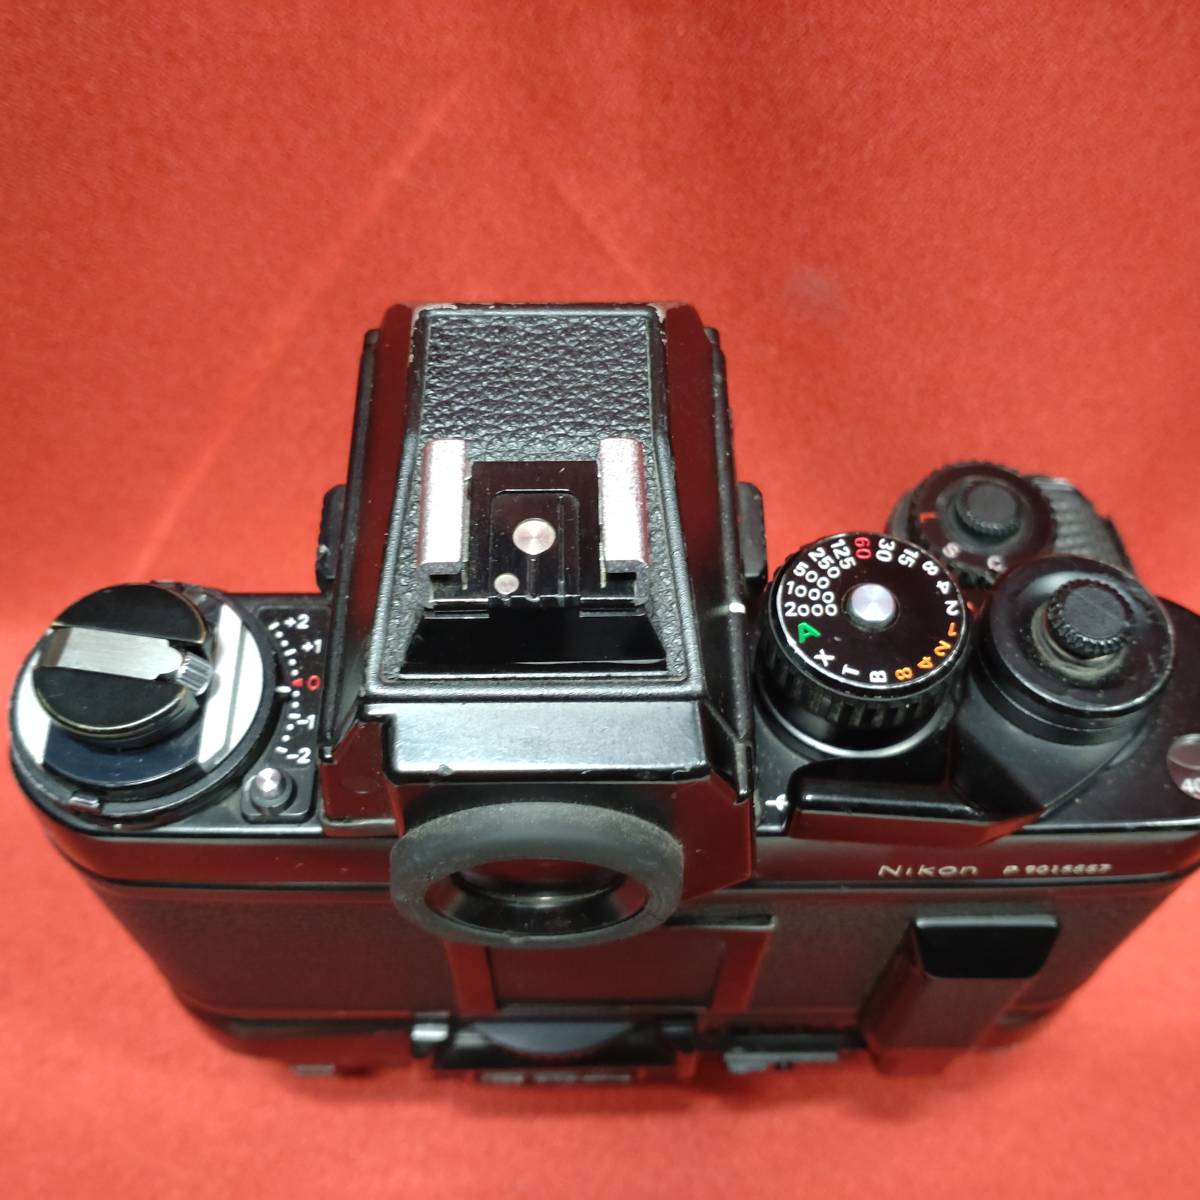 Nikon F3P + MD-4 ニコン フィルム一眼レフカメラ ボディ 報道機関向け